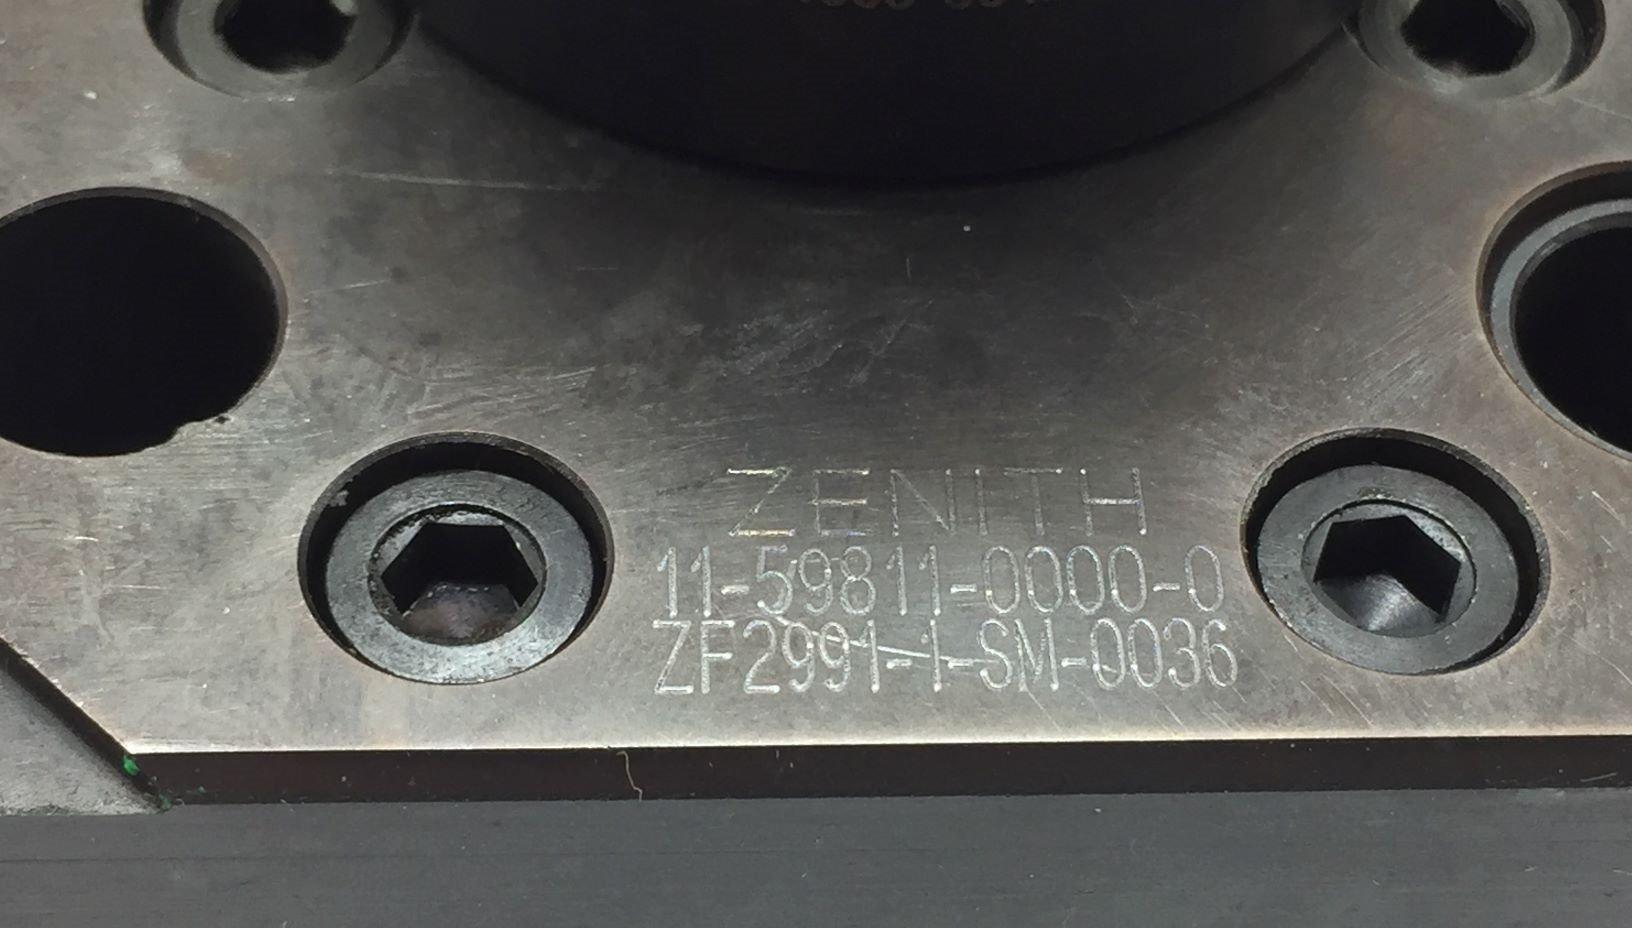 ZENITH 11-59811-0000-0 Metering Pump 